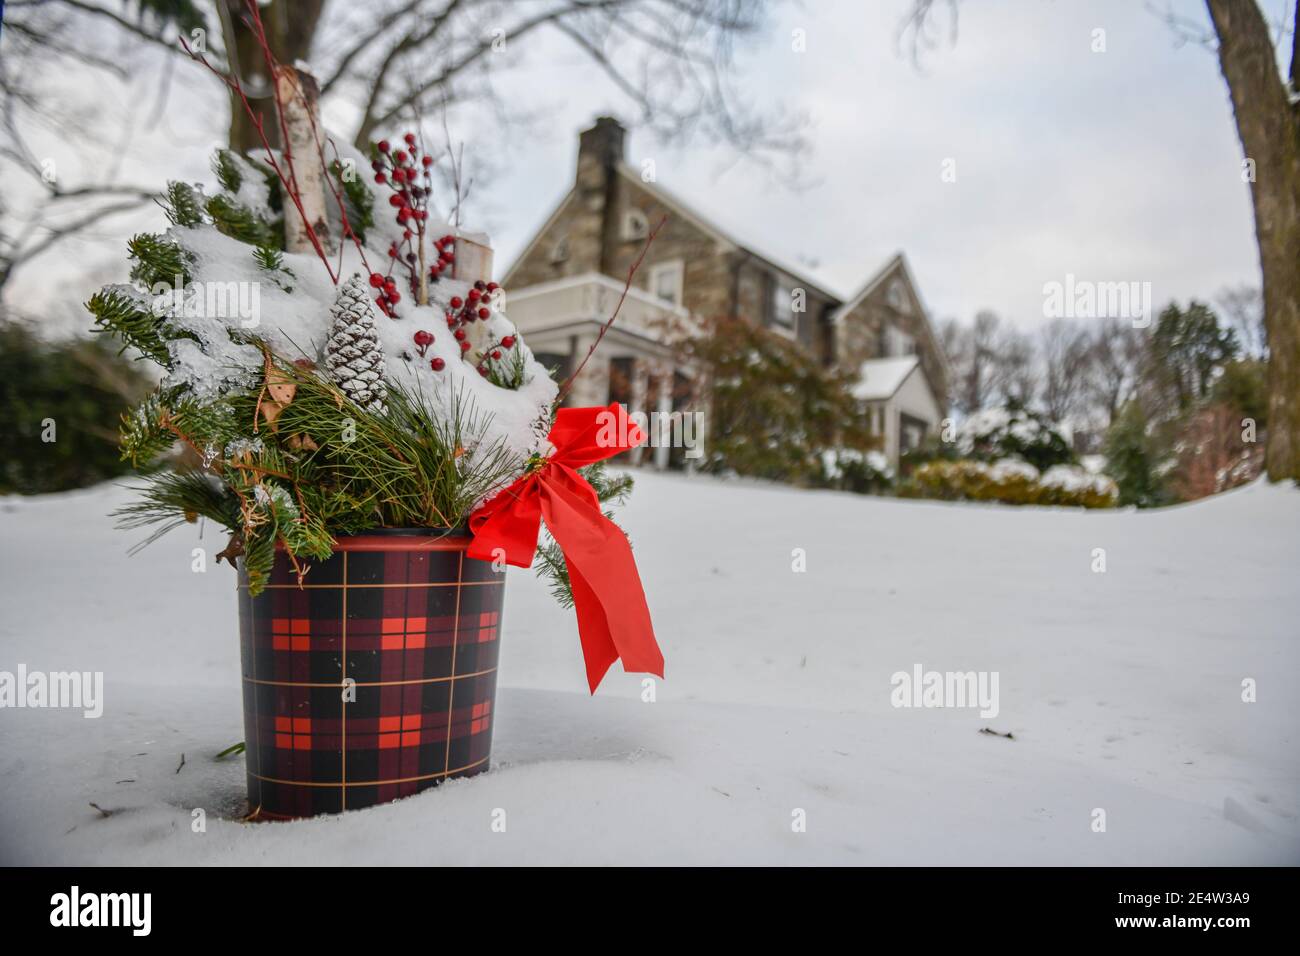 Décorations de Noël dans la neige - décorations de Noël en plein air enneigées Banque D'Images